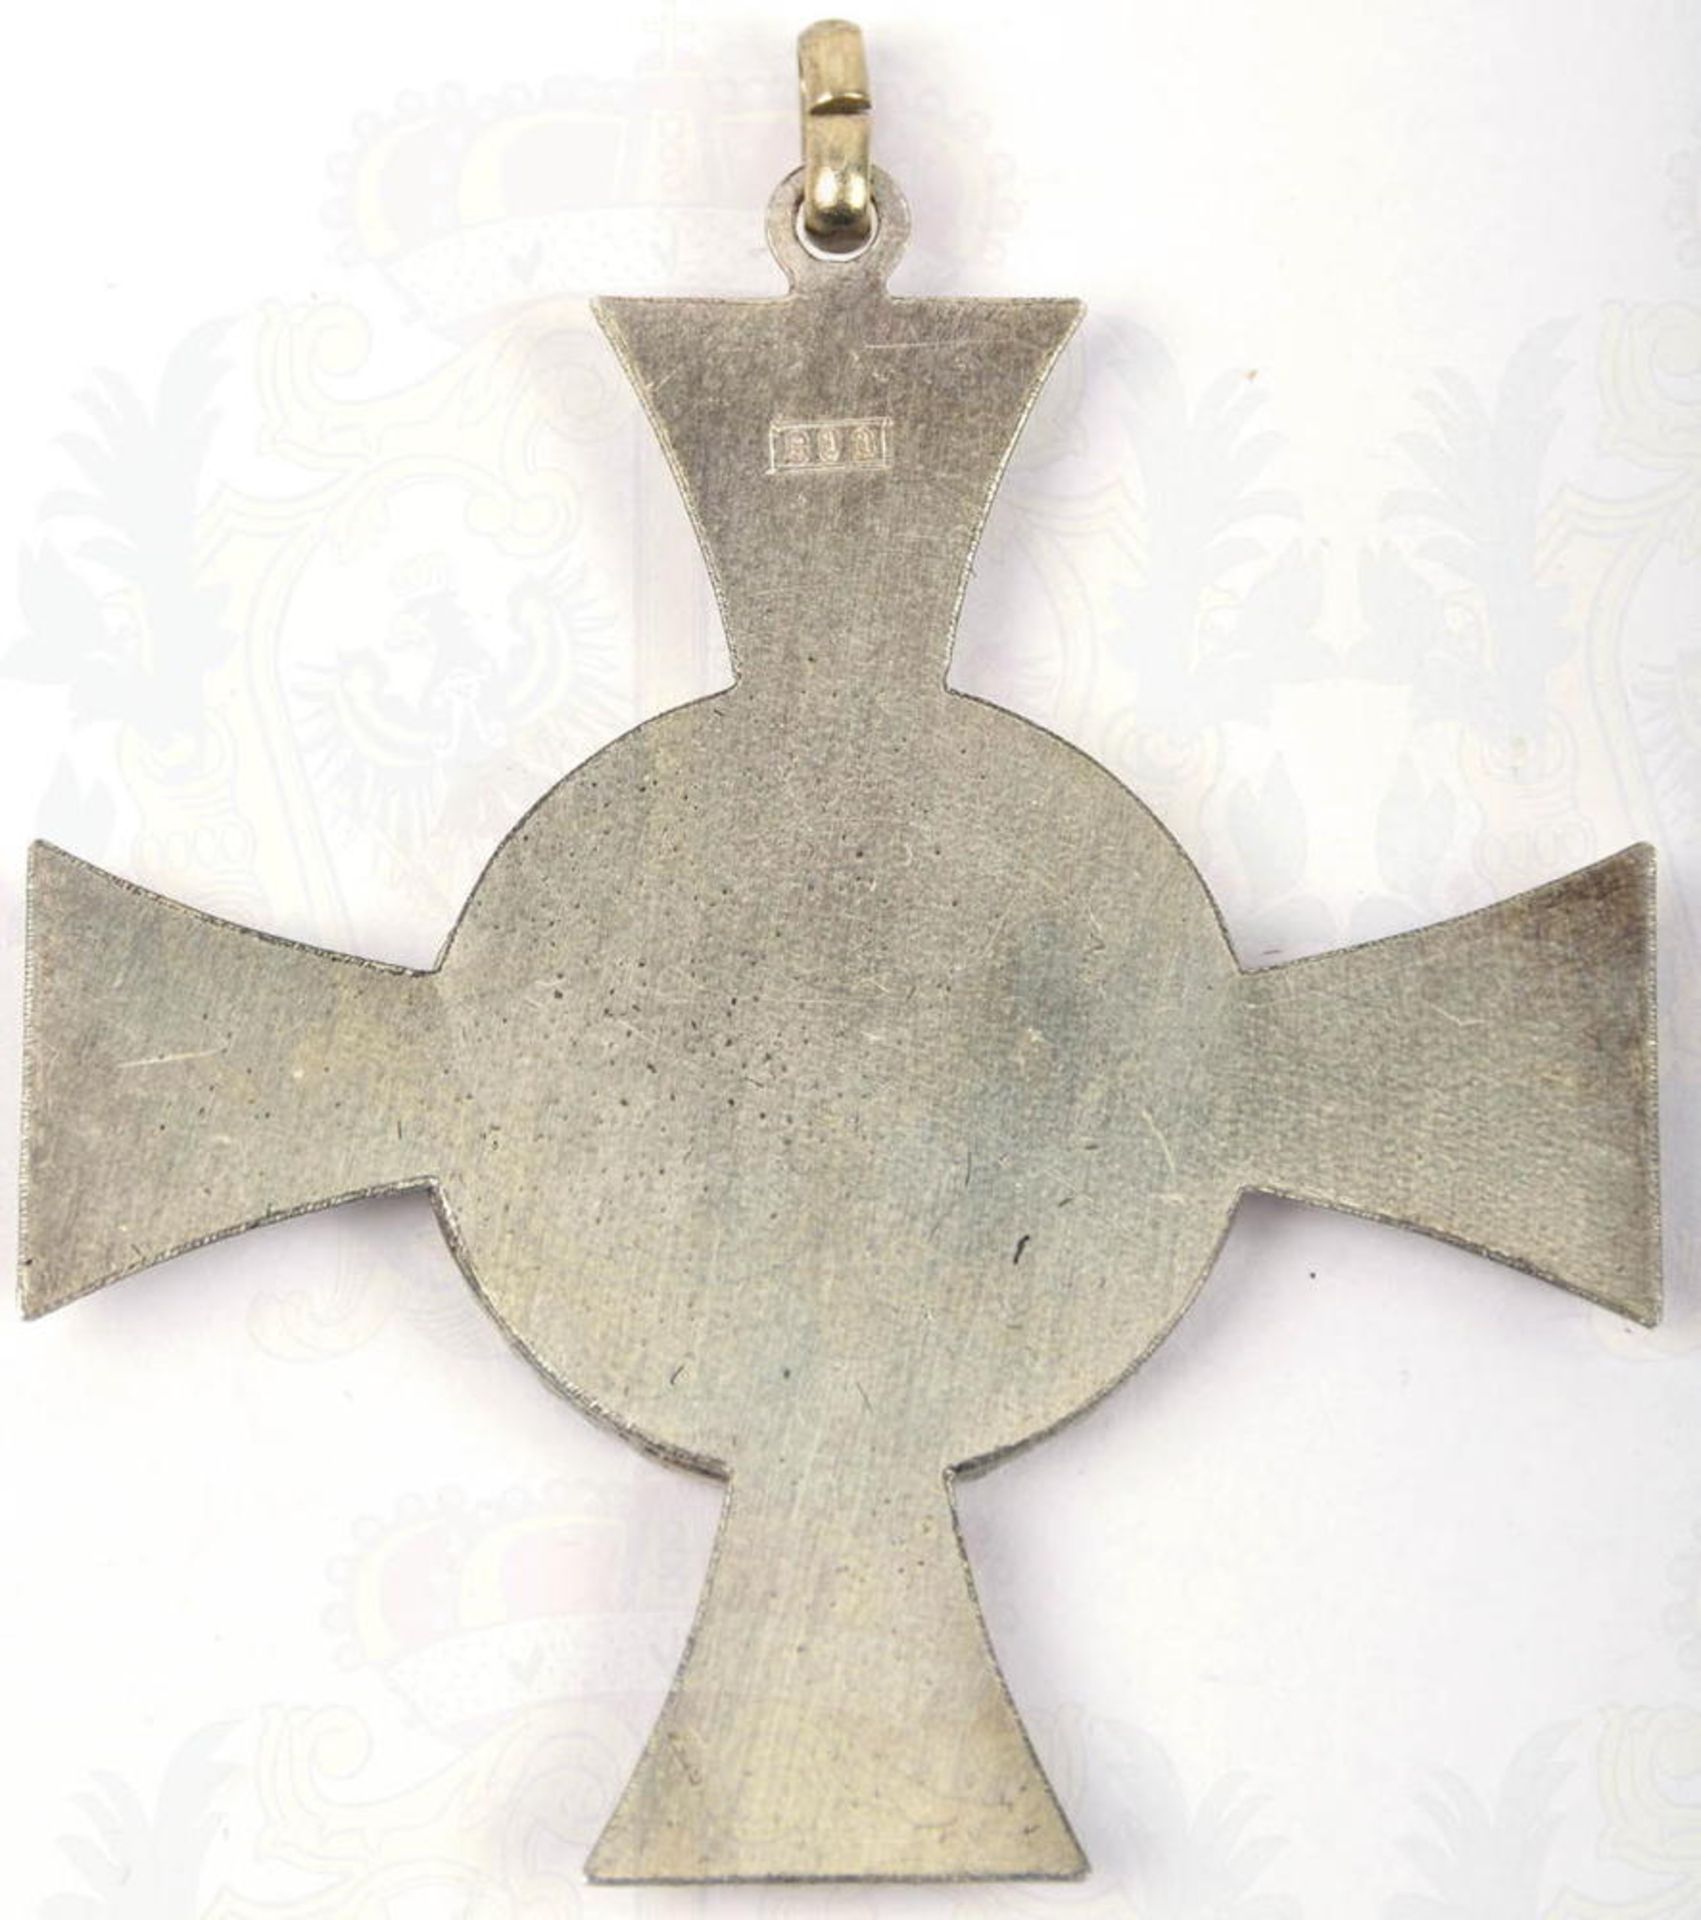 DRK-SCHWESTERNKREUZ MIT EICHENKRANZ, 2. Form, Silber, erhaben punziert „800“ im Rechteck, sep. Medai - Bild 2 aus 4